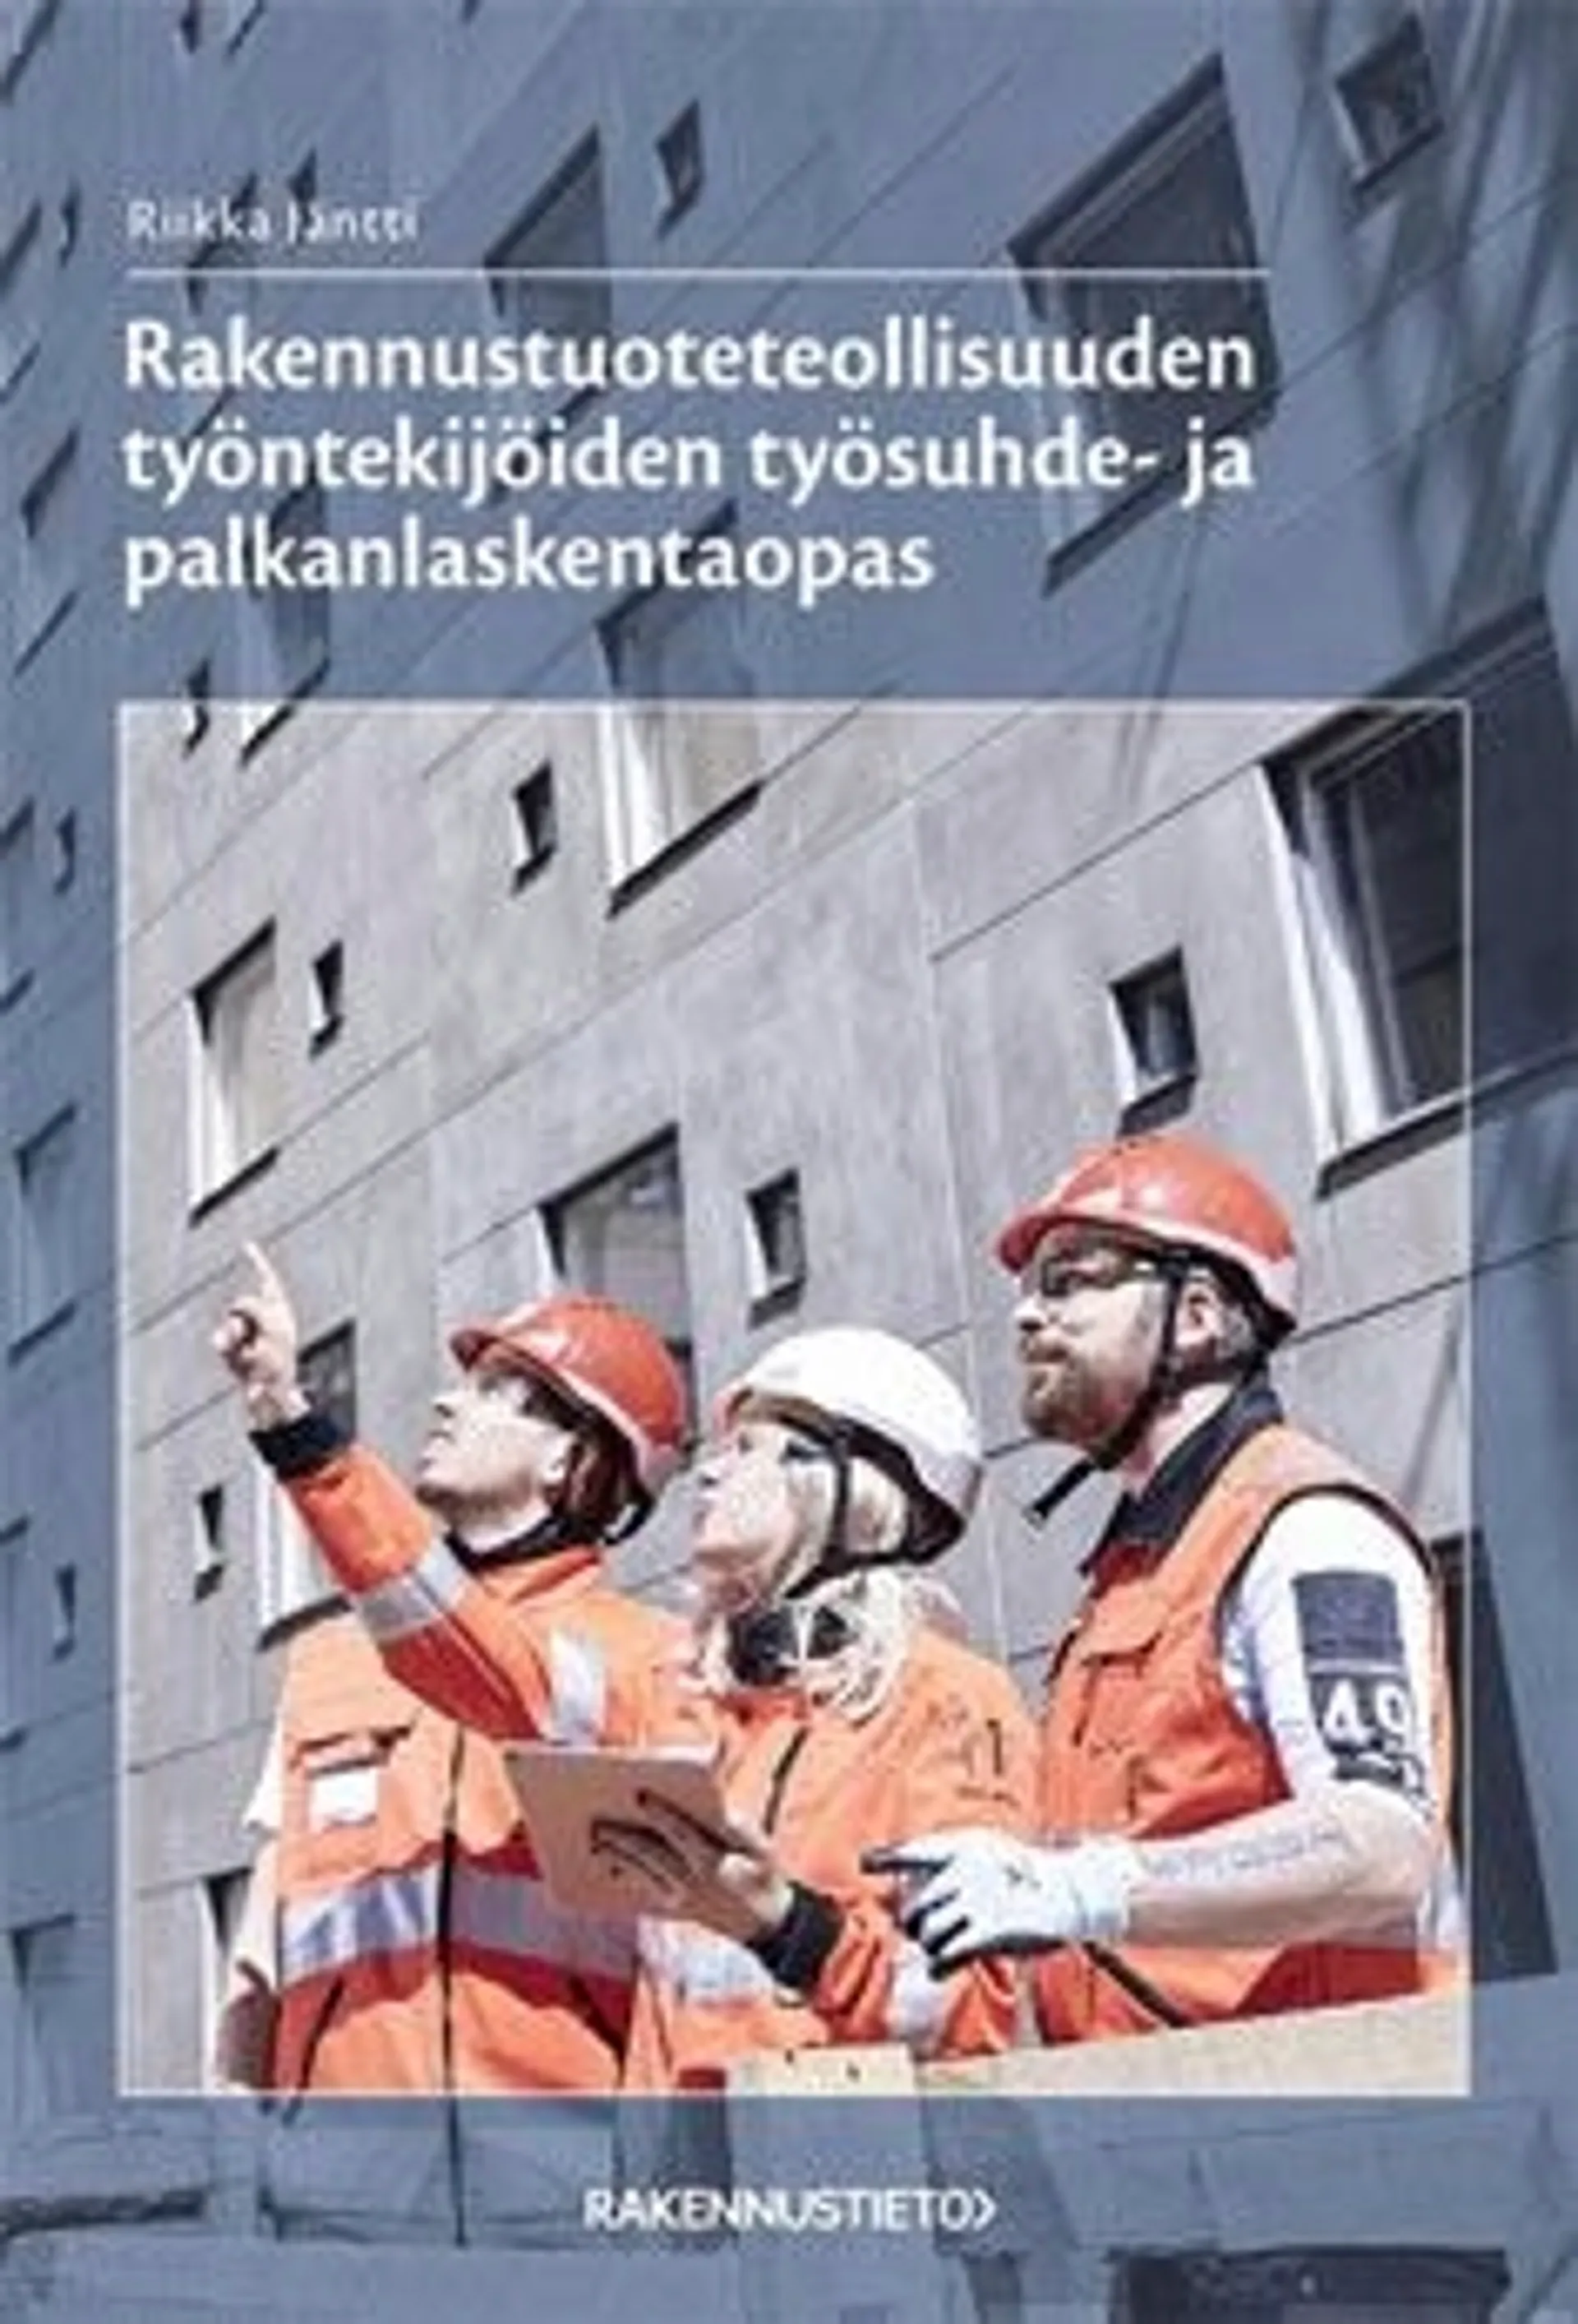 Jäntti, Rakennustuoteteollisuuden työntekijöiden työsuhde- ja palkanlaskentaopas